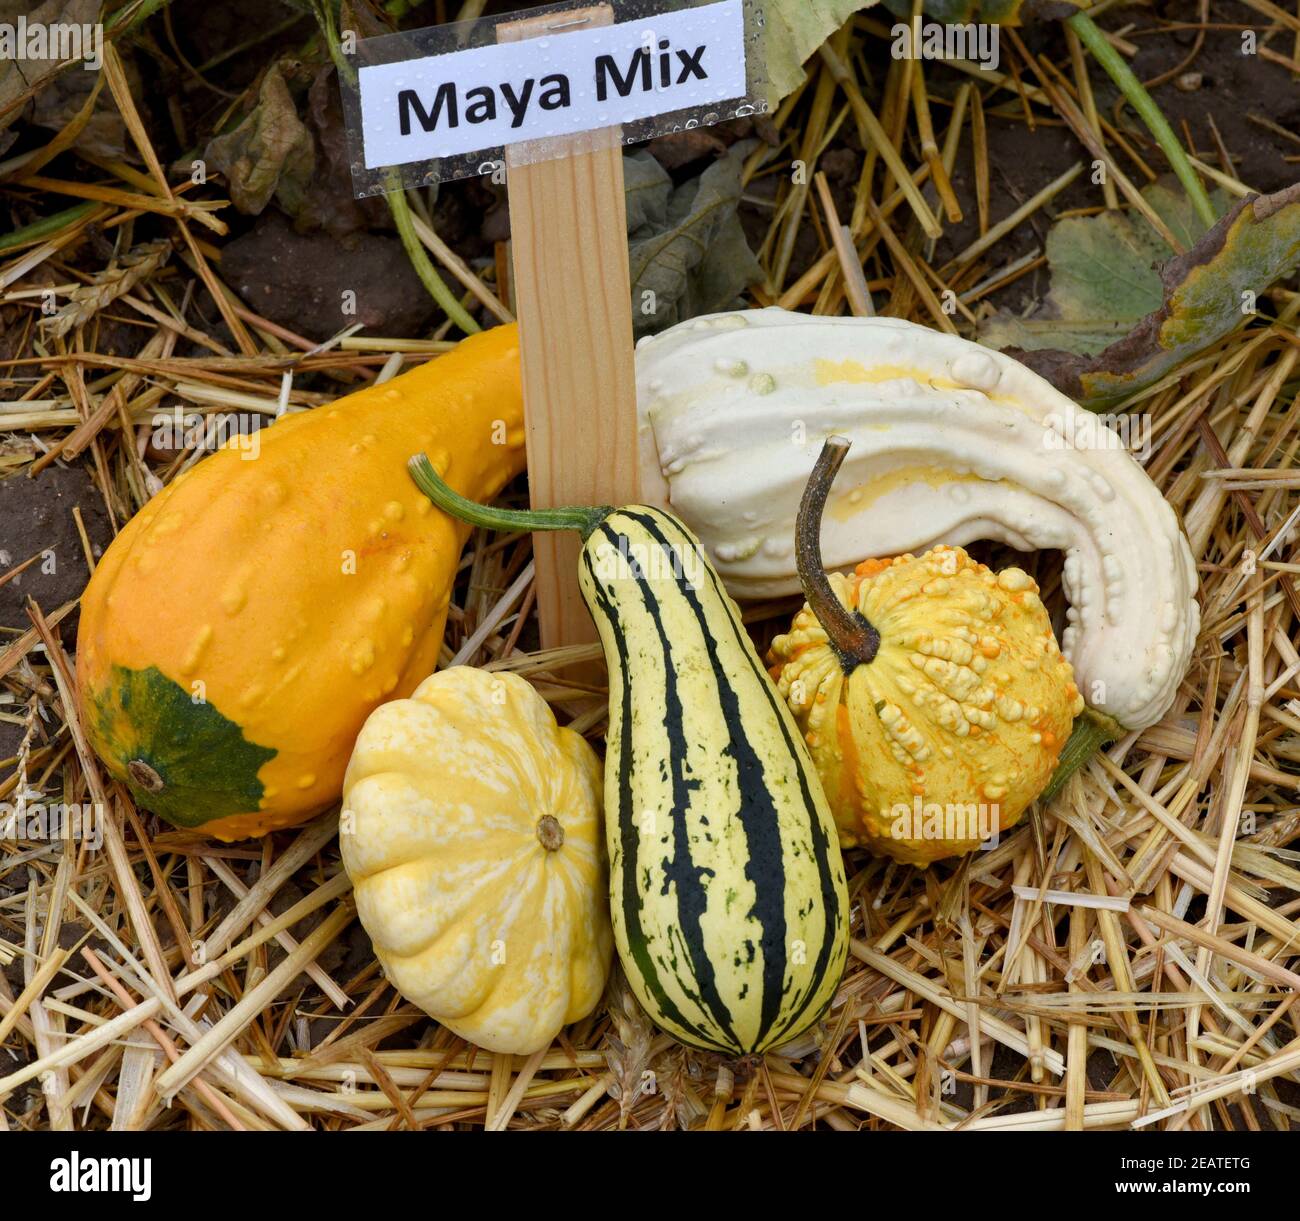 Maya Mix, Zierkuerbis, Kuerbis Stock Photo